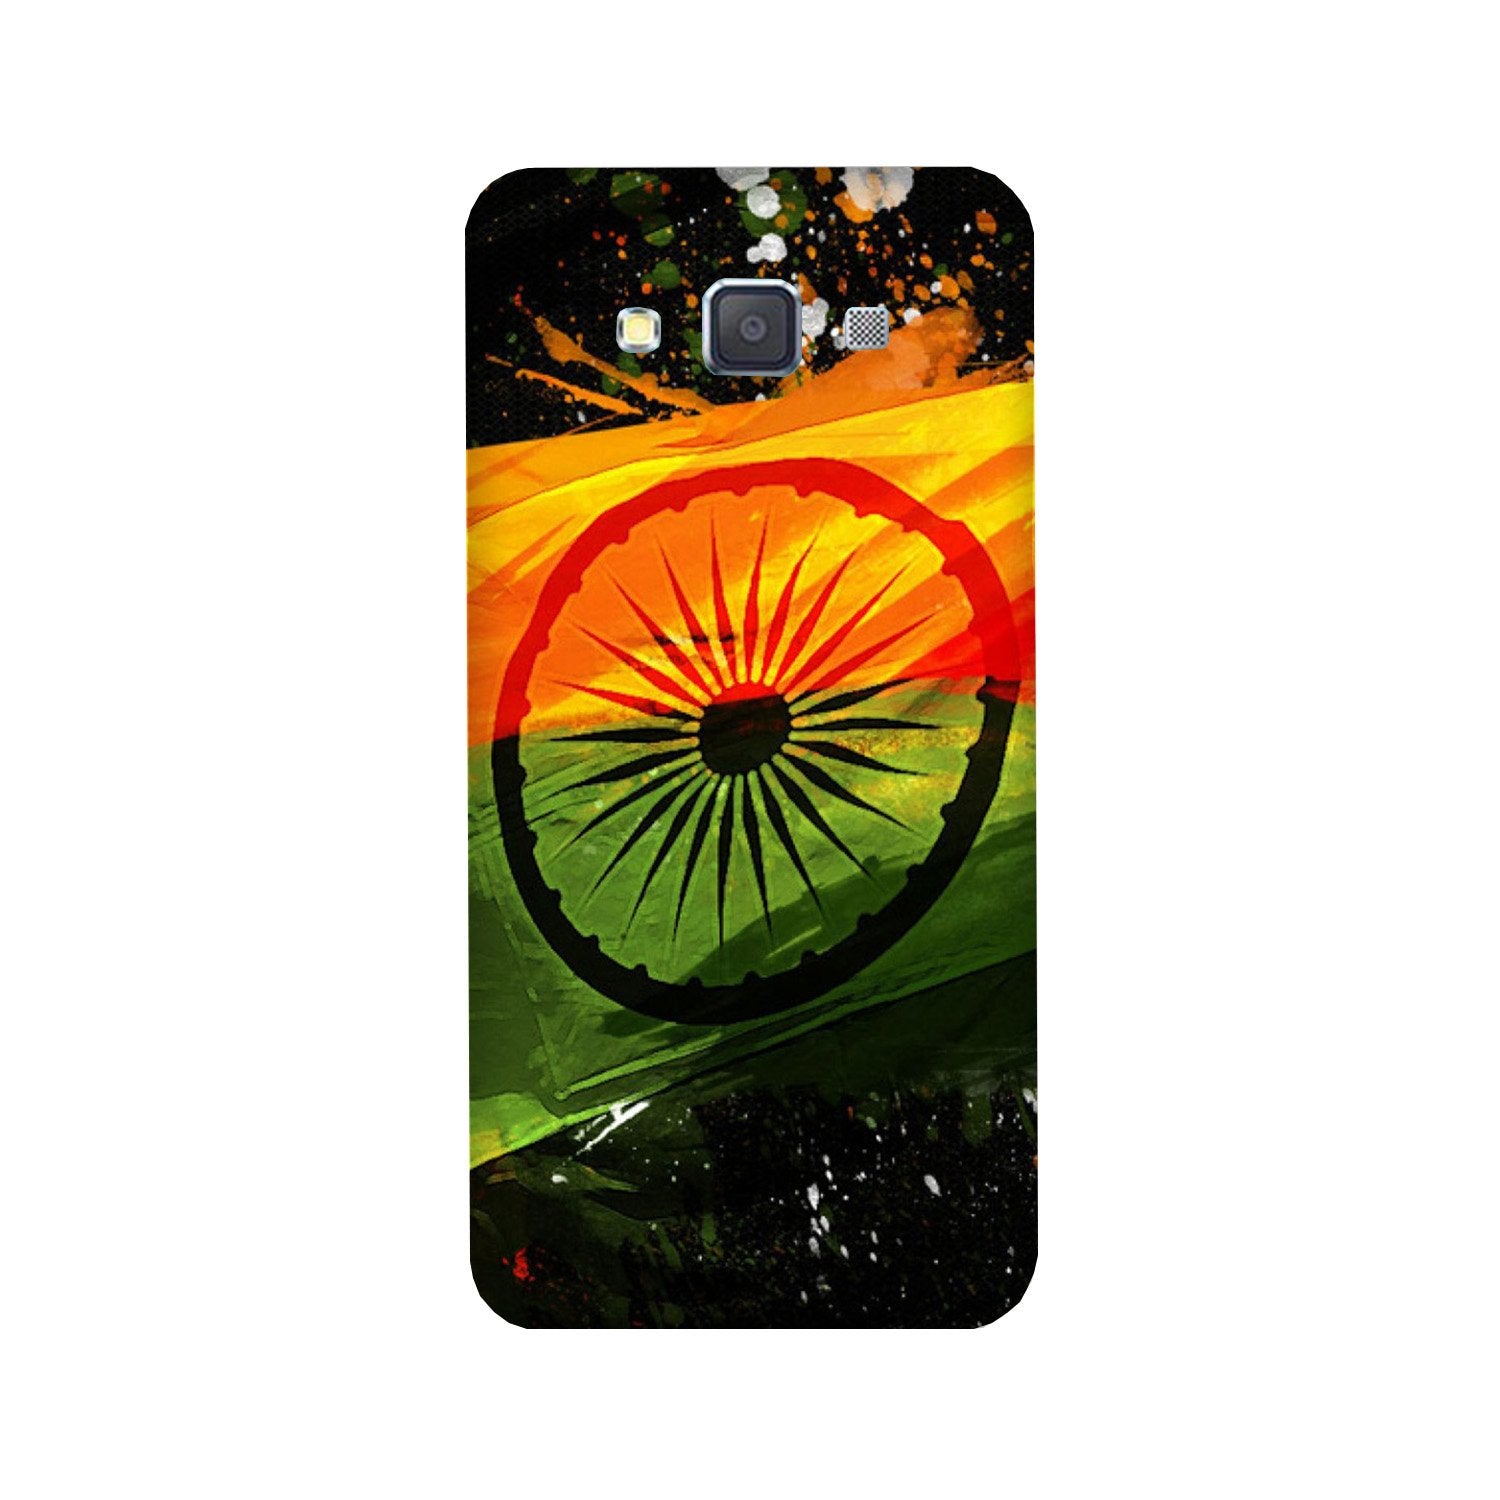 Indian Flag Case for Galaxy E5  (Design - 137)